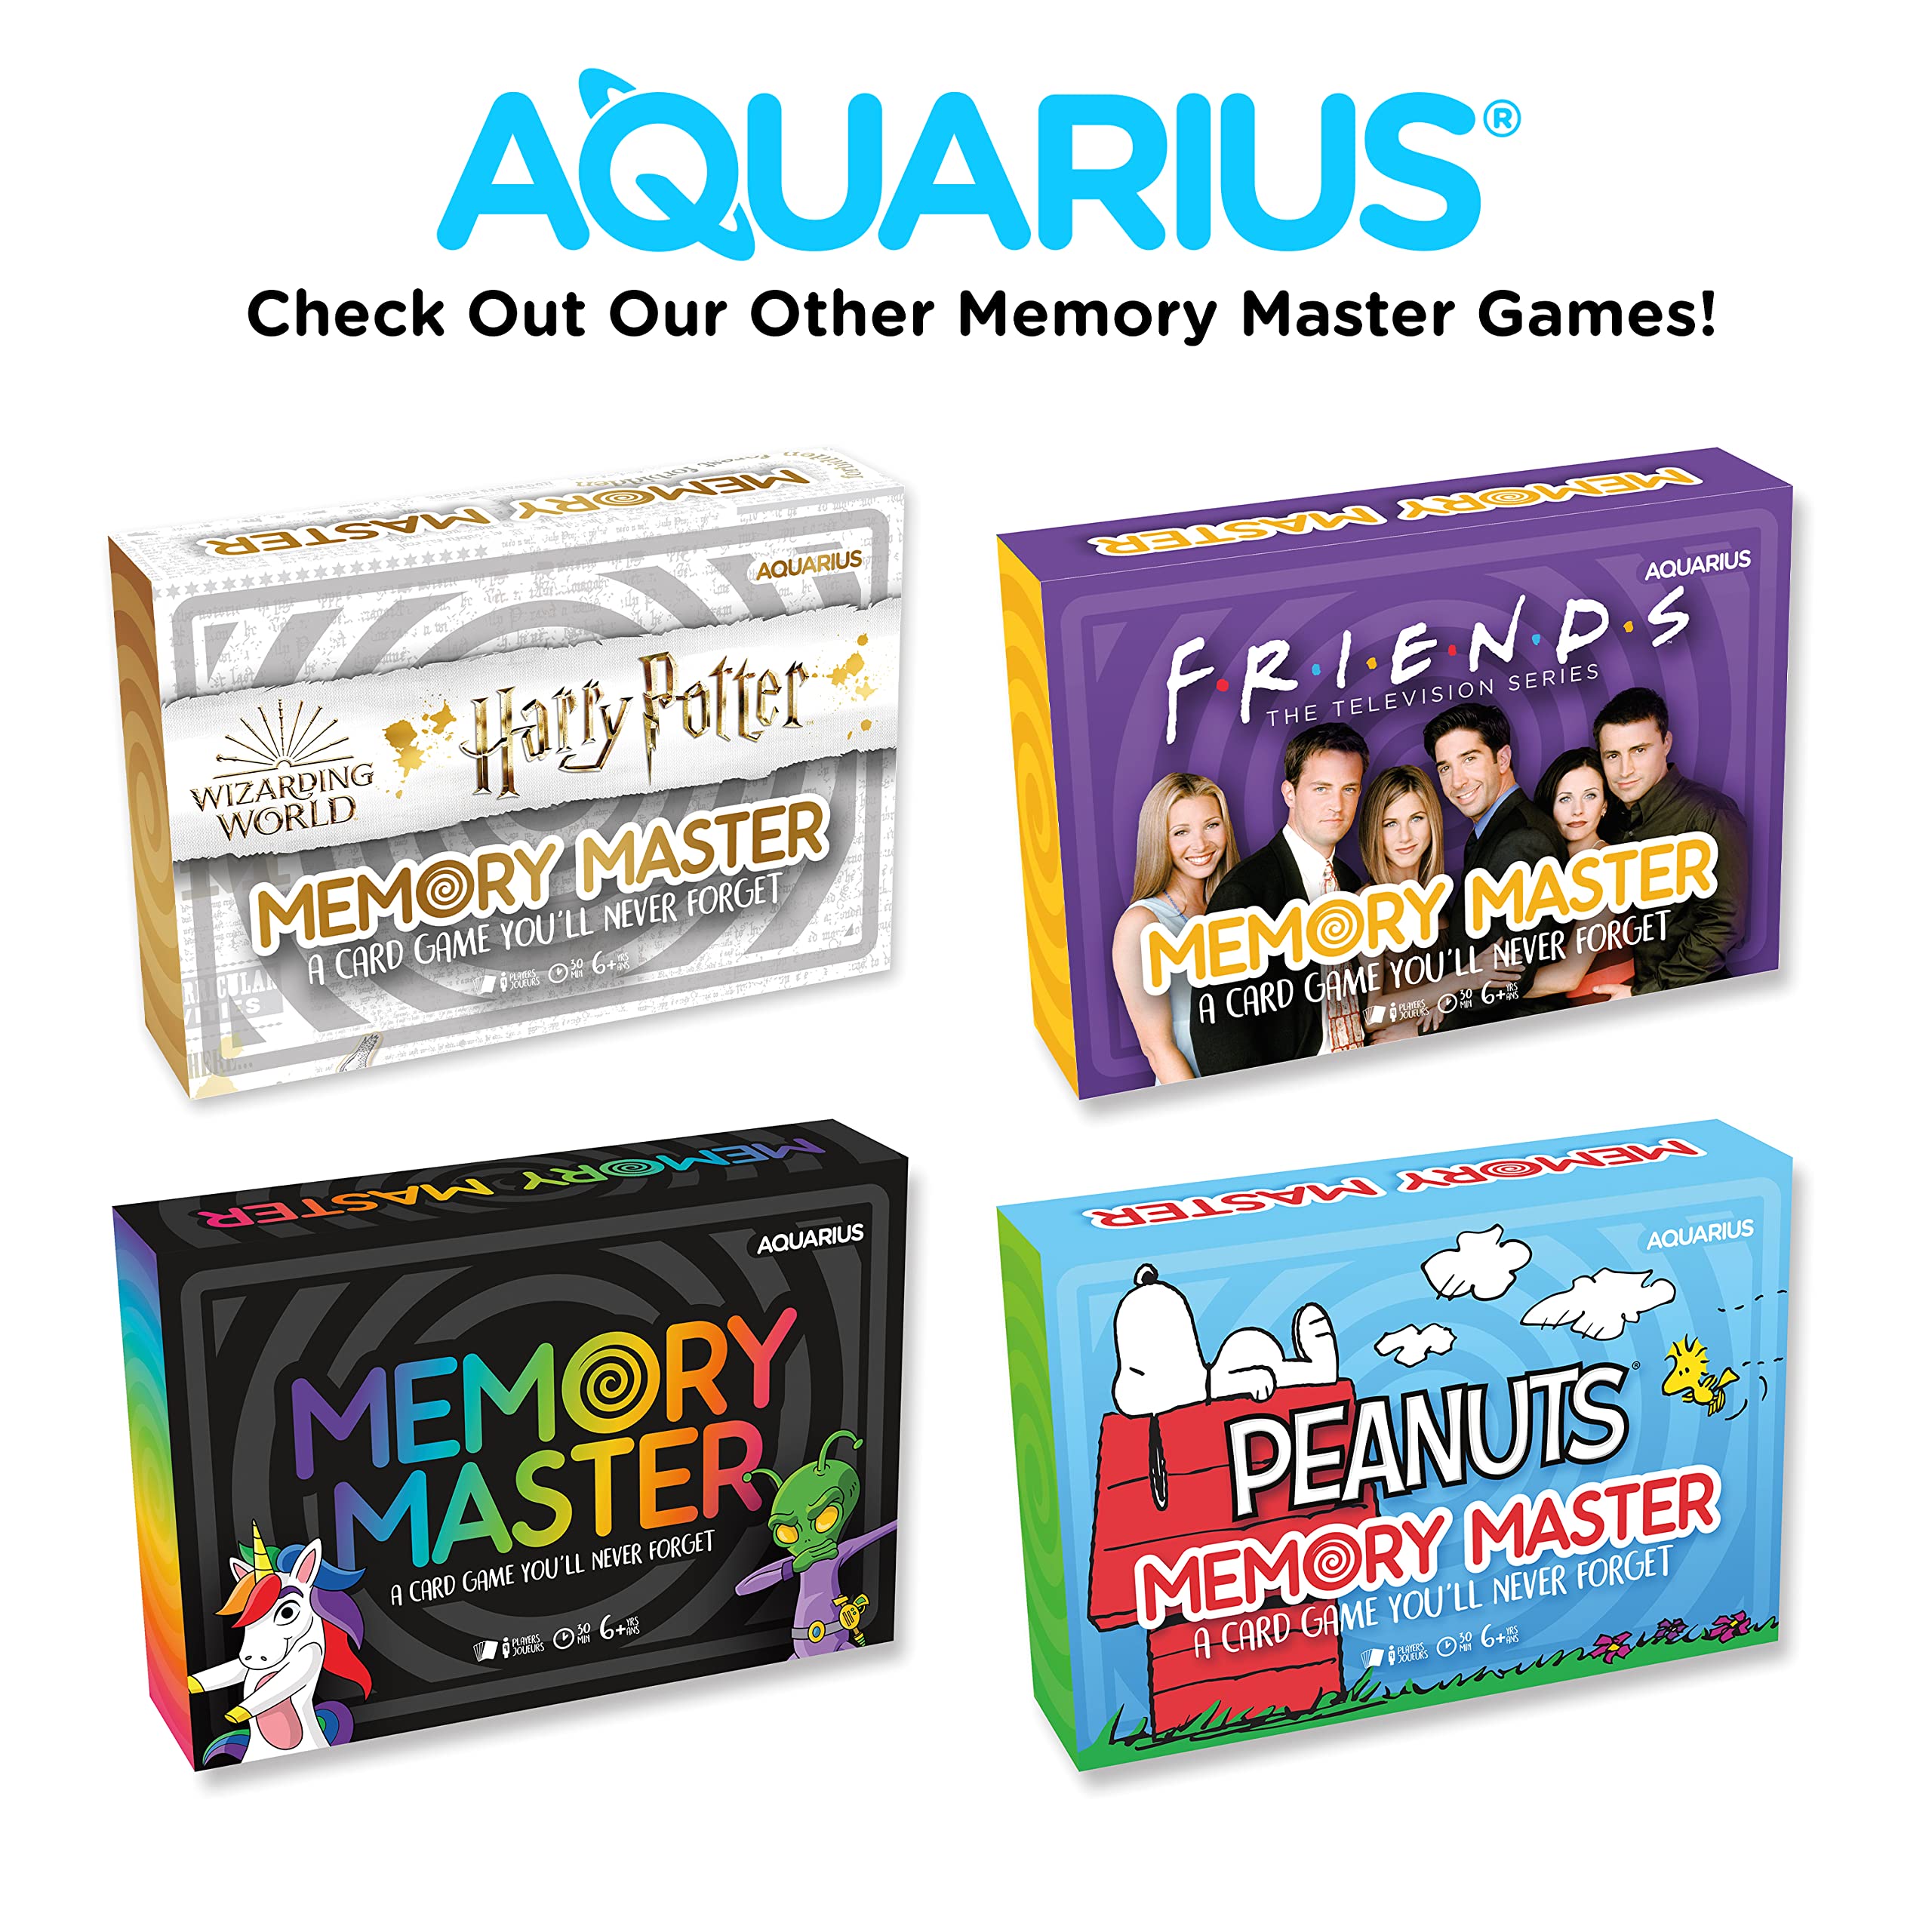 AQUARIUS - Peanuts Charlie Brown Christmas Memory Master Card Game